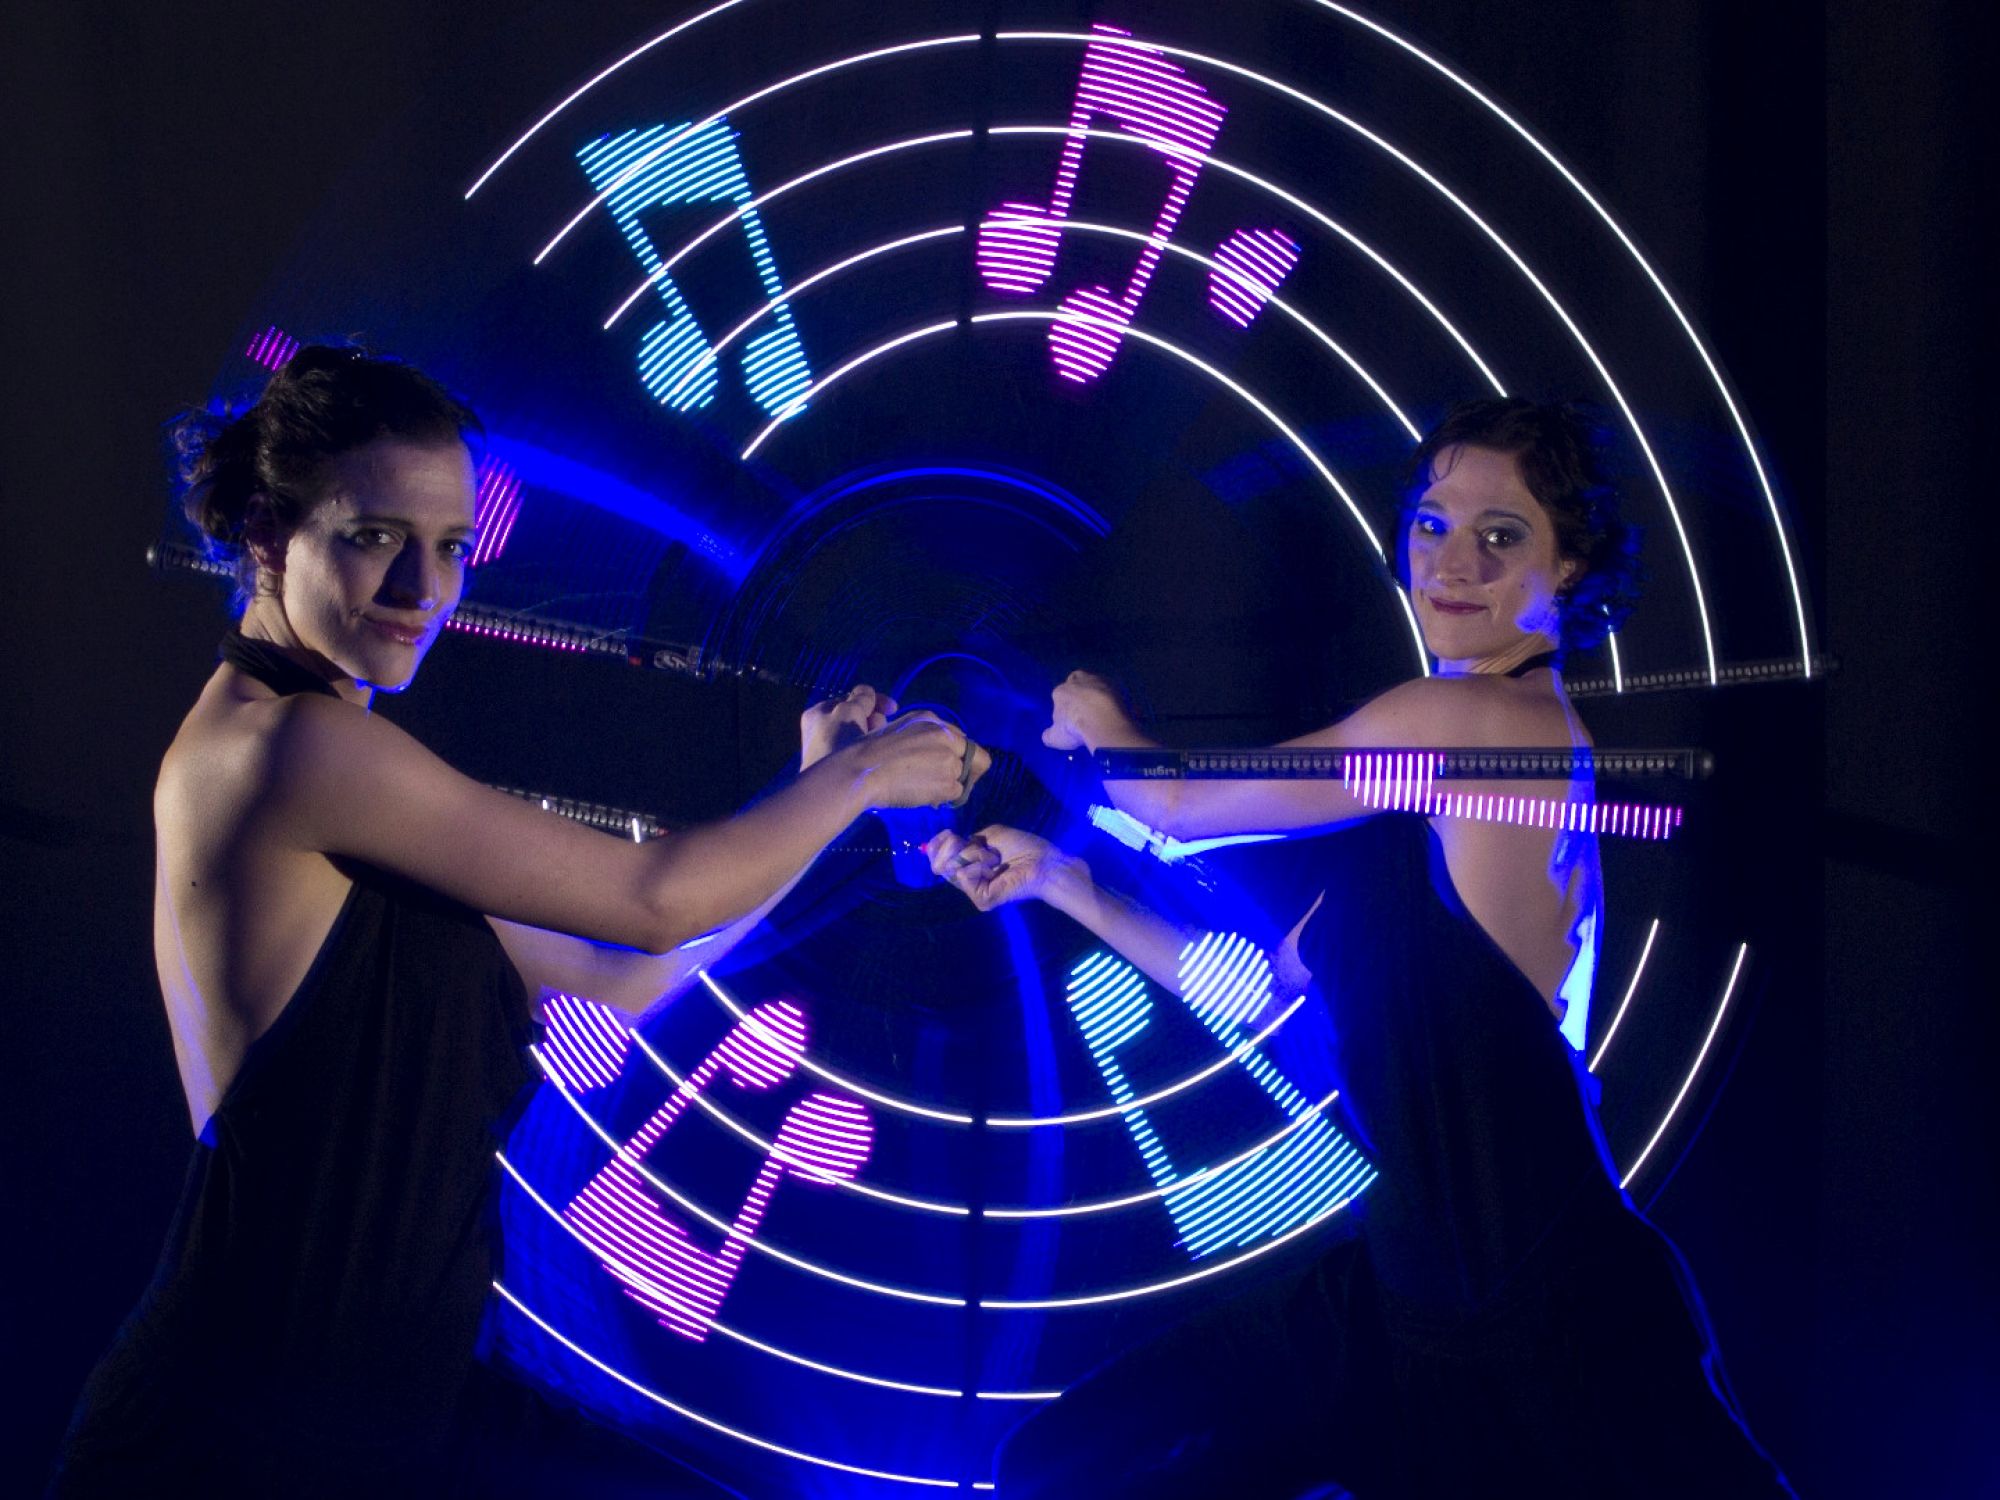 LED-Show mit Logos und Schriftzügen zu Live-Musik auf der Violine